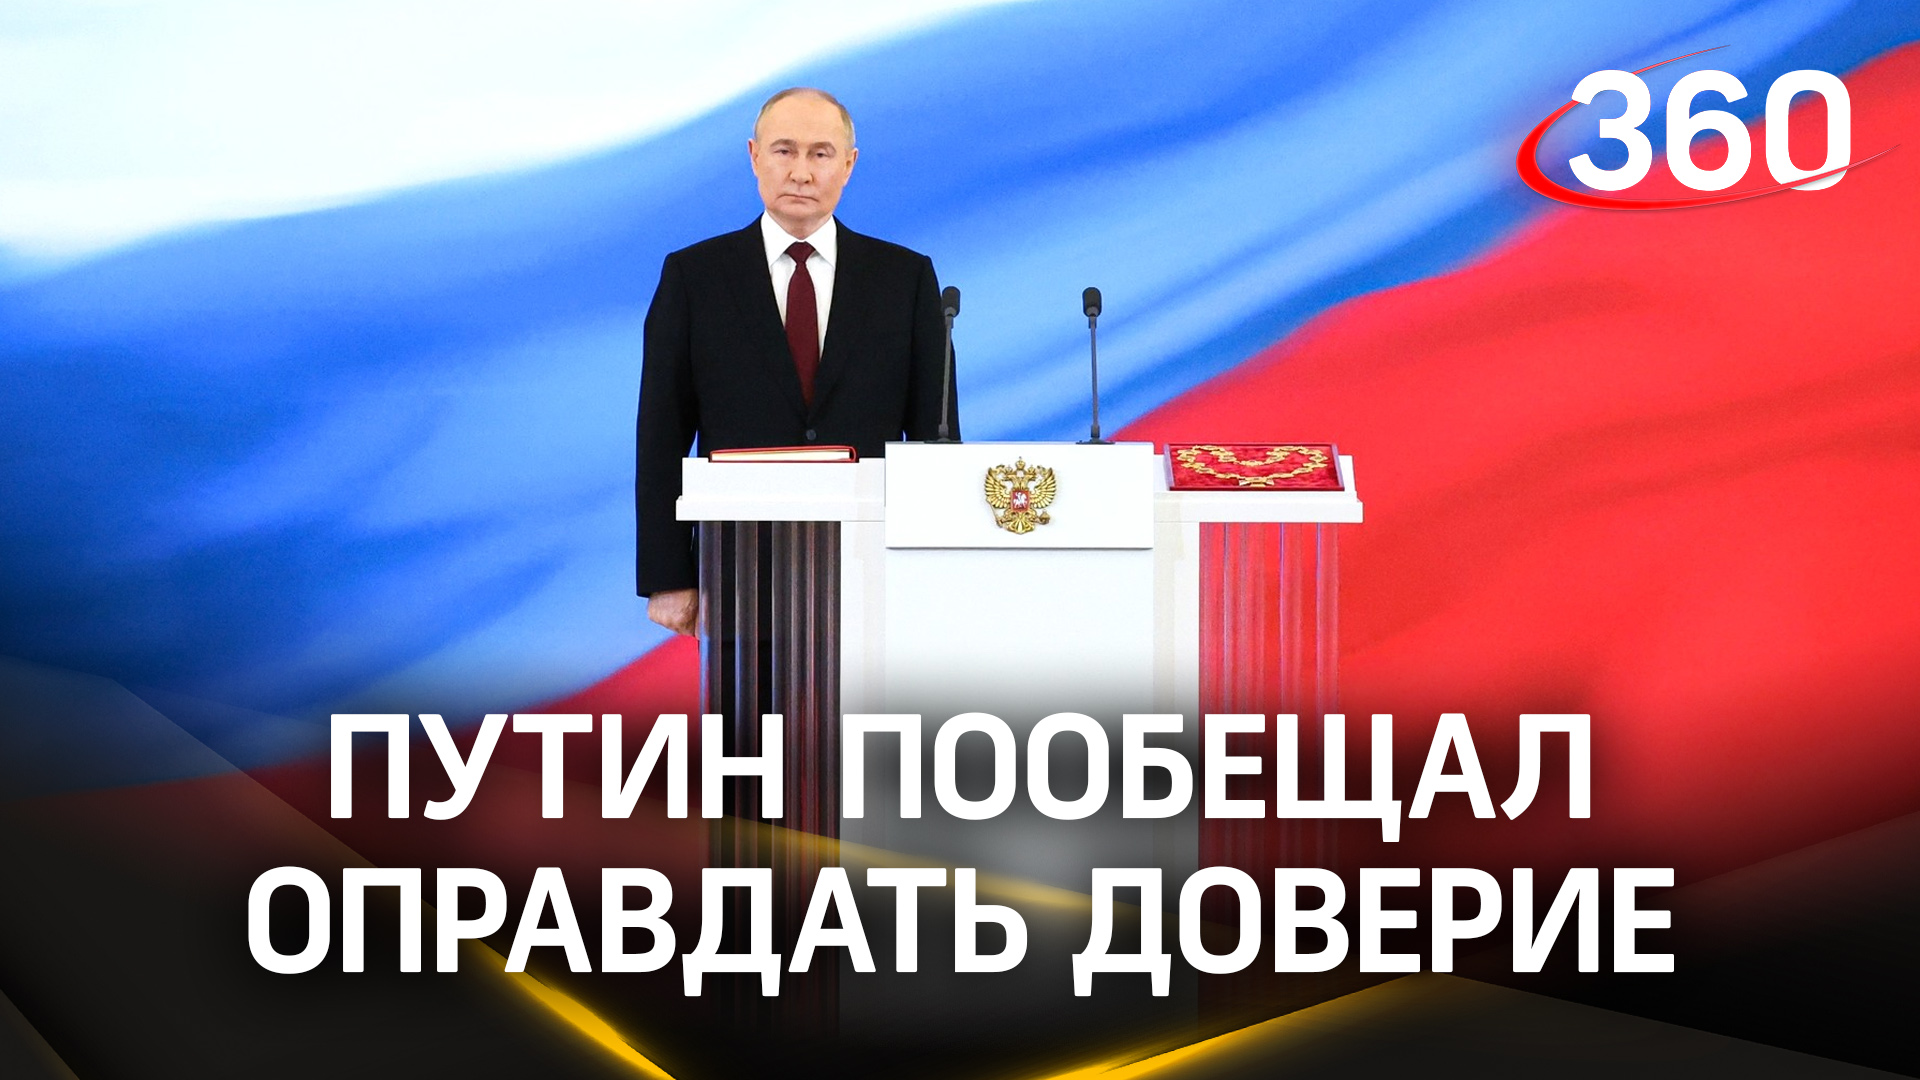 Путин о работе: «Буду делать всё необходимое, трудиться с полной отдачей». Речь на инаугурации